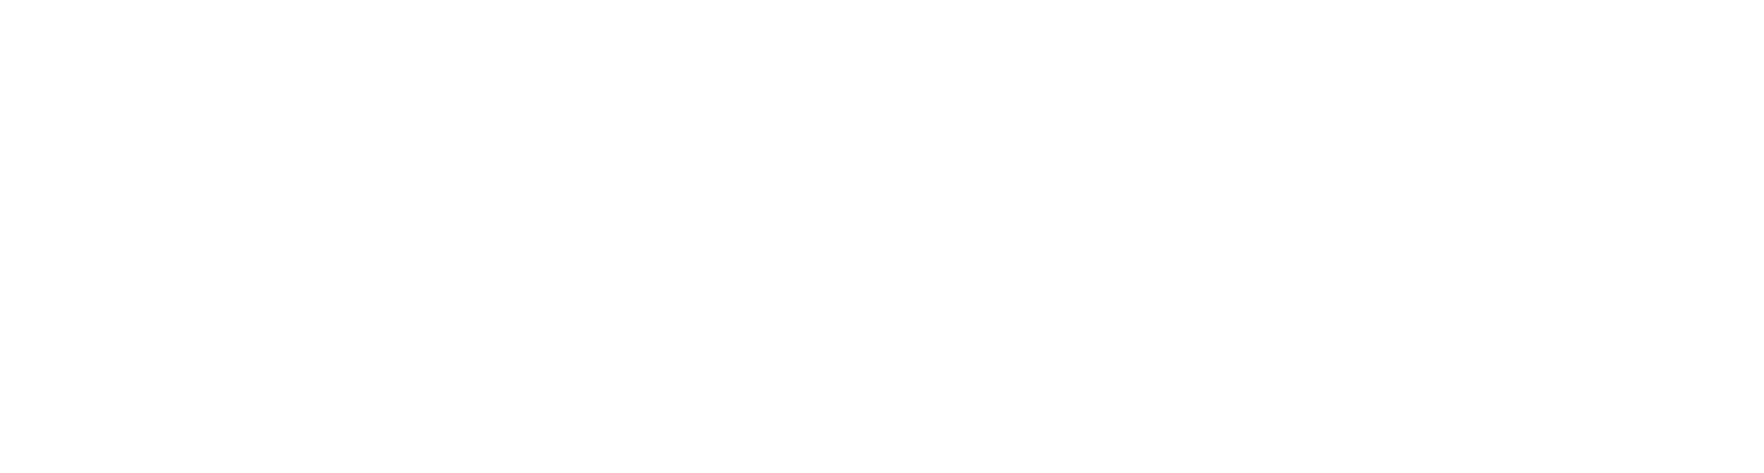 Mustard Seed Communities